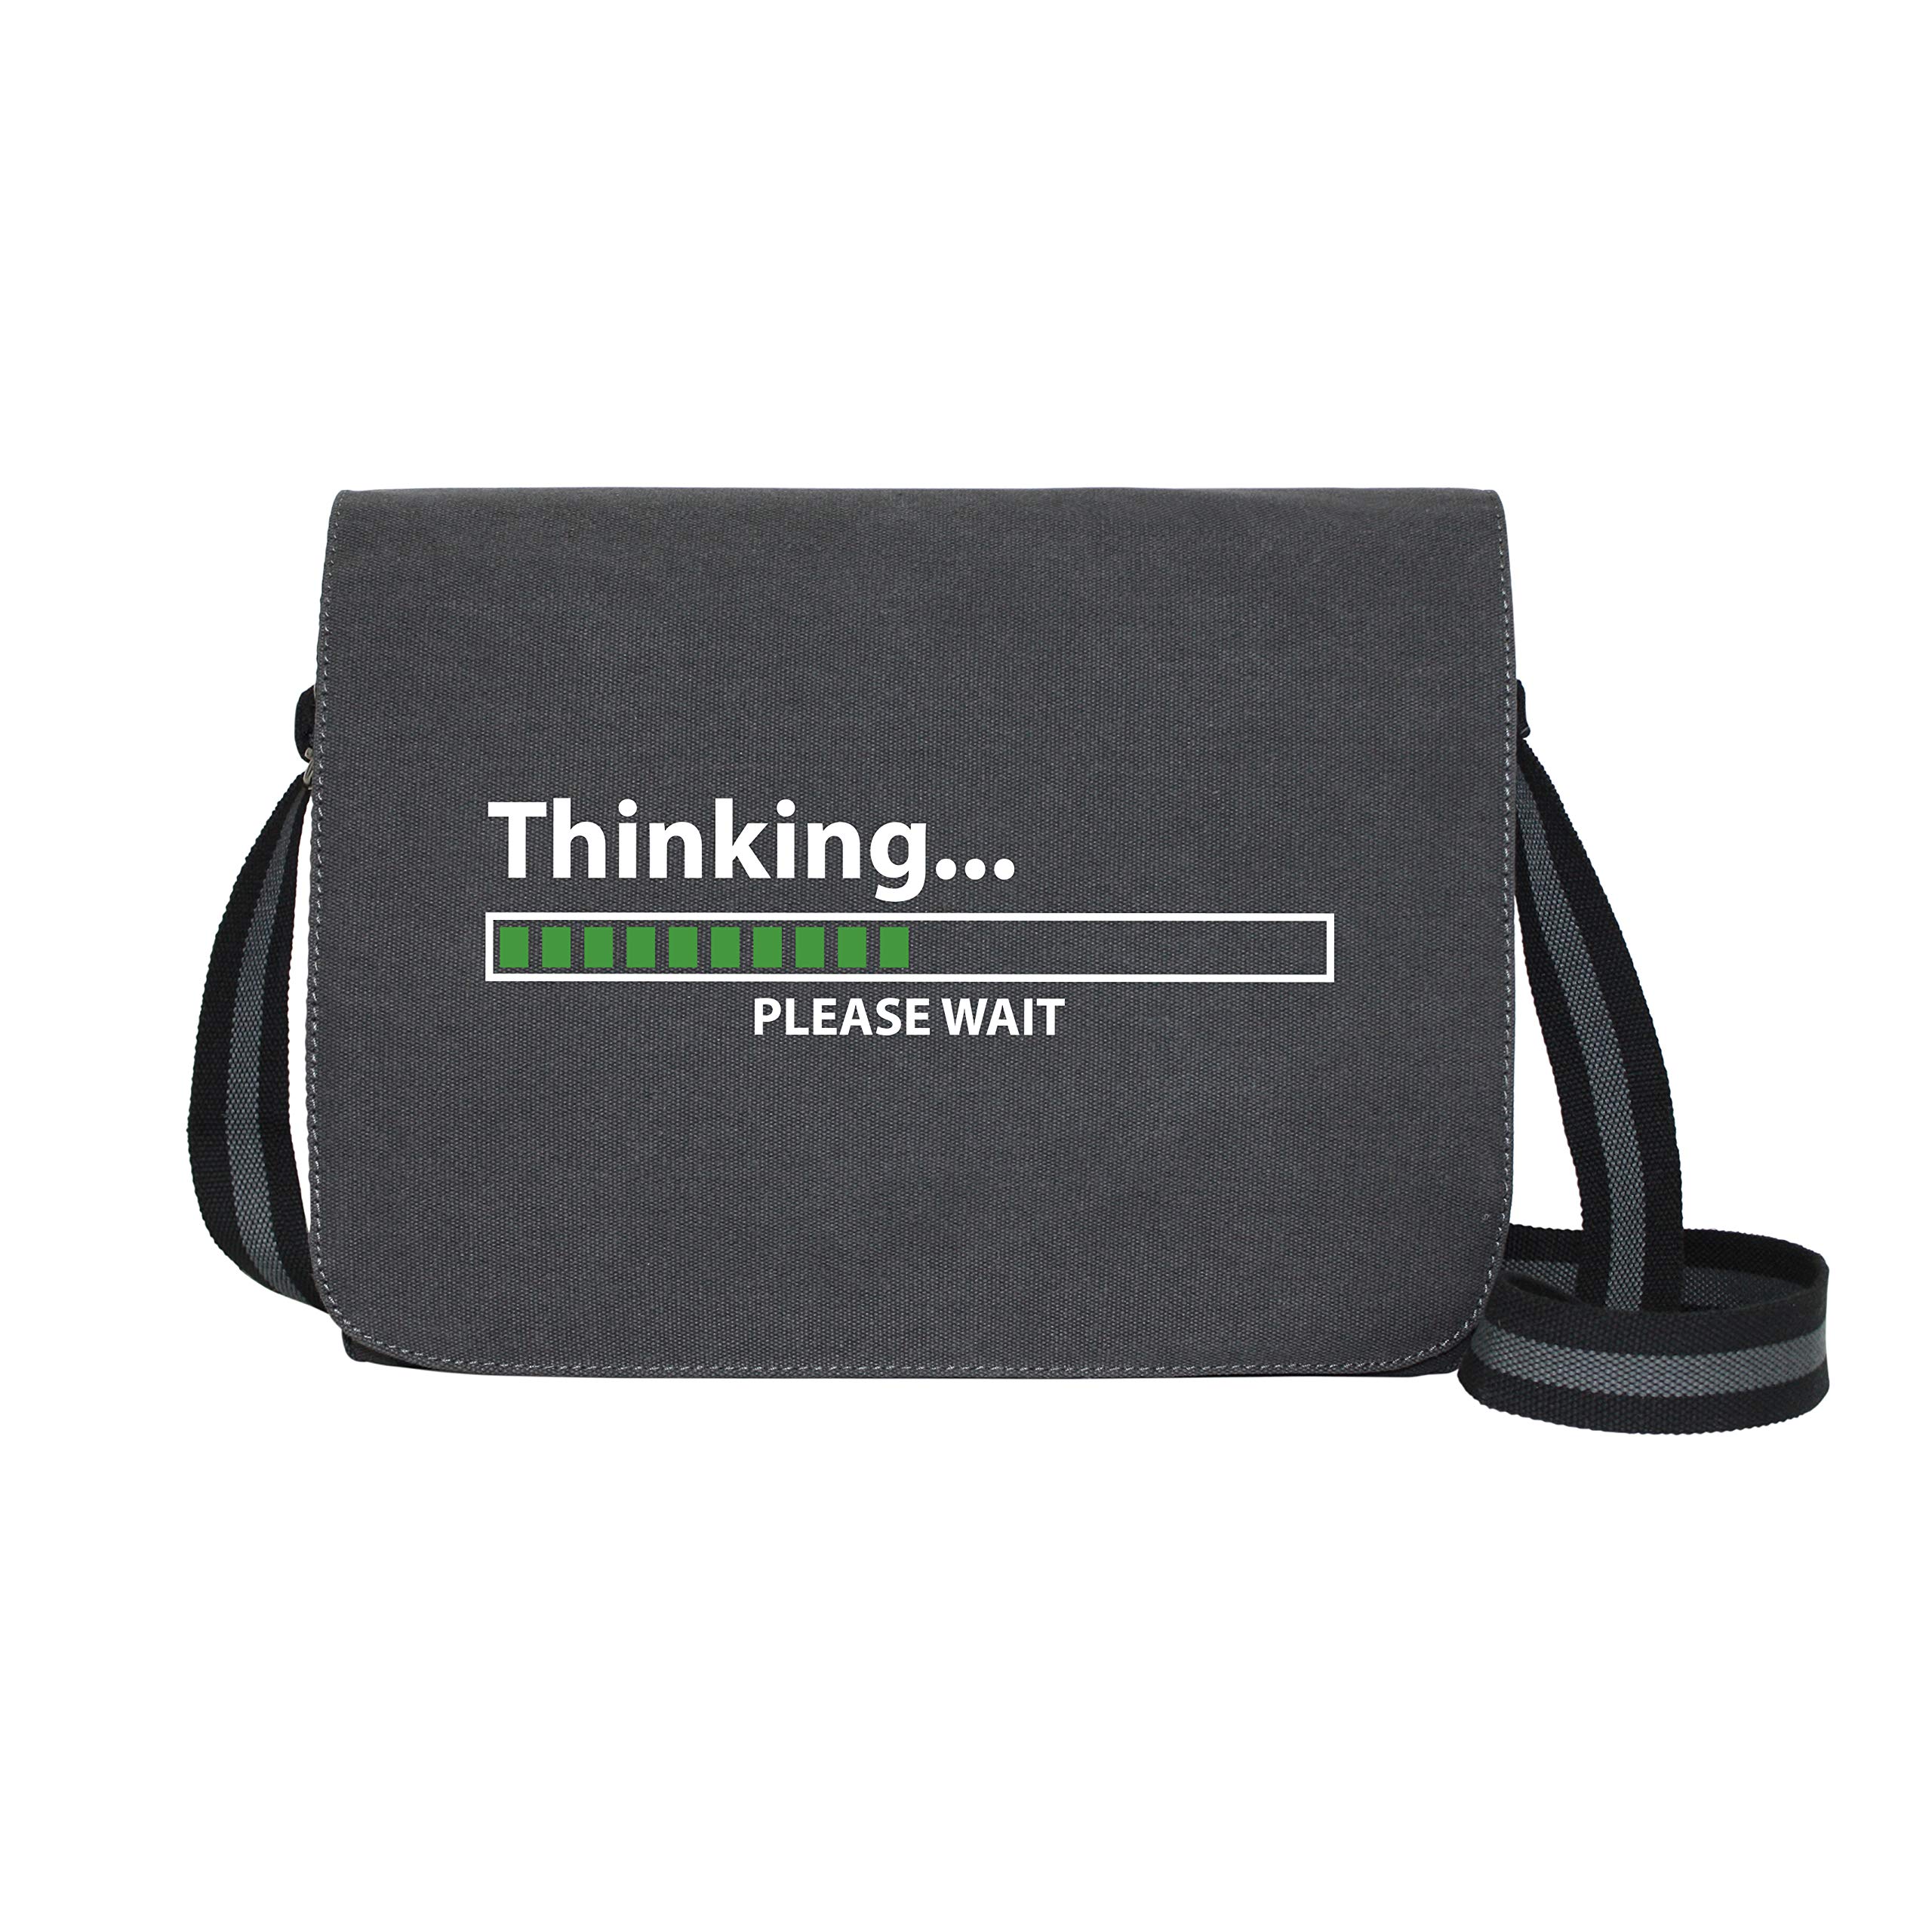 getDigital Thinking - Umhängetasche Messenger Bag für Geeks und Nerds mit 5 Fächern - 15.6 Zoll, Schwarz Anthrazit